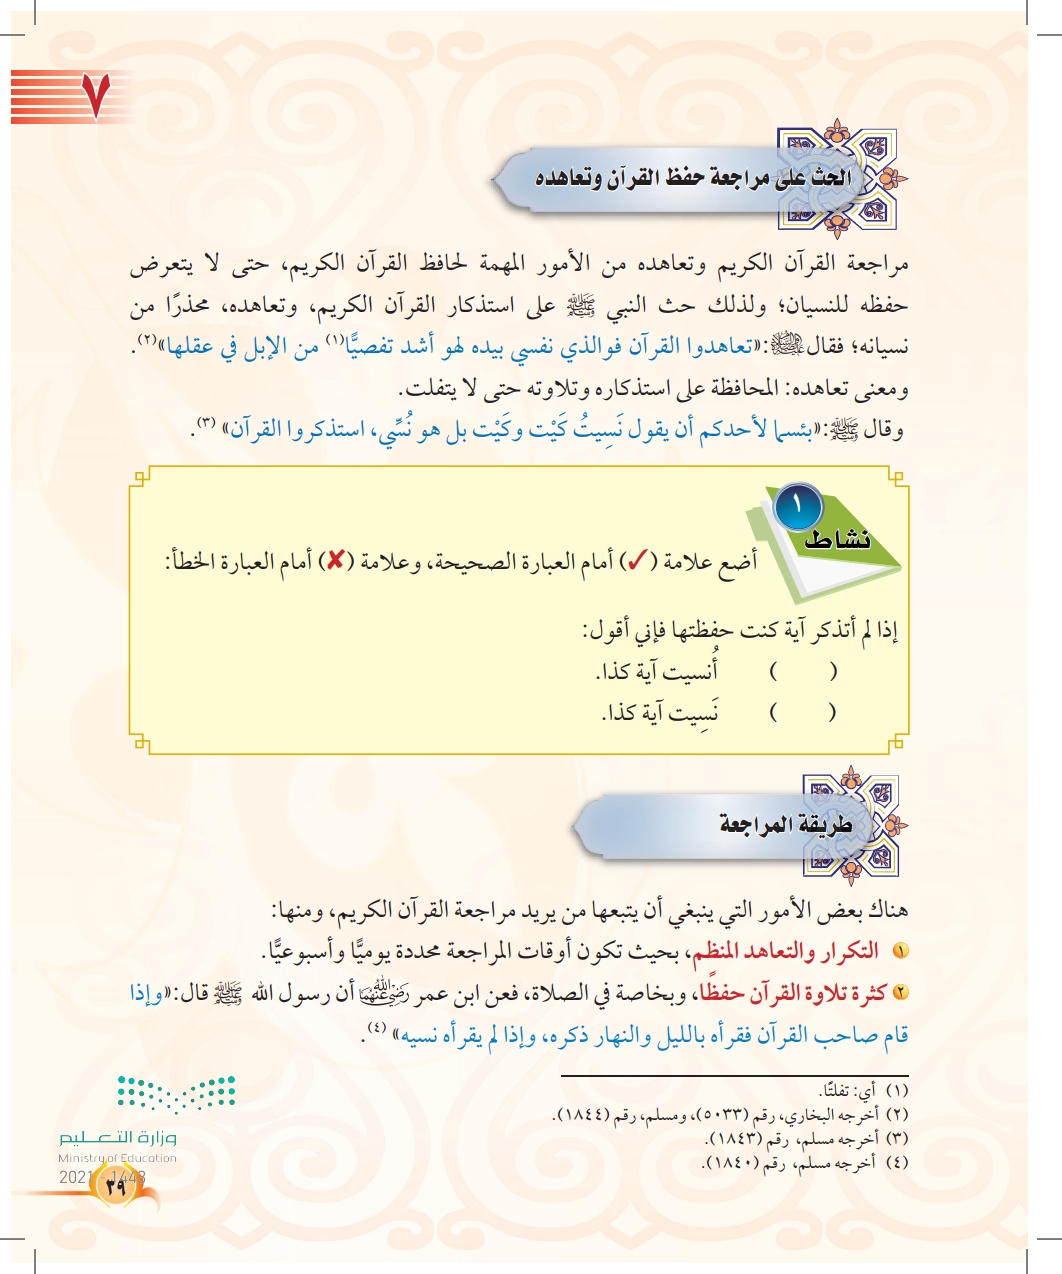 الدرس السابع: مراجعة القرآن الكريم وتعاهده